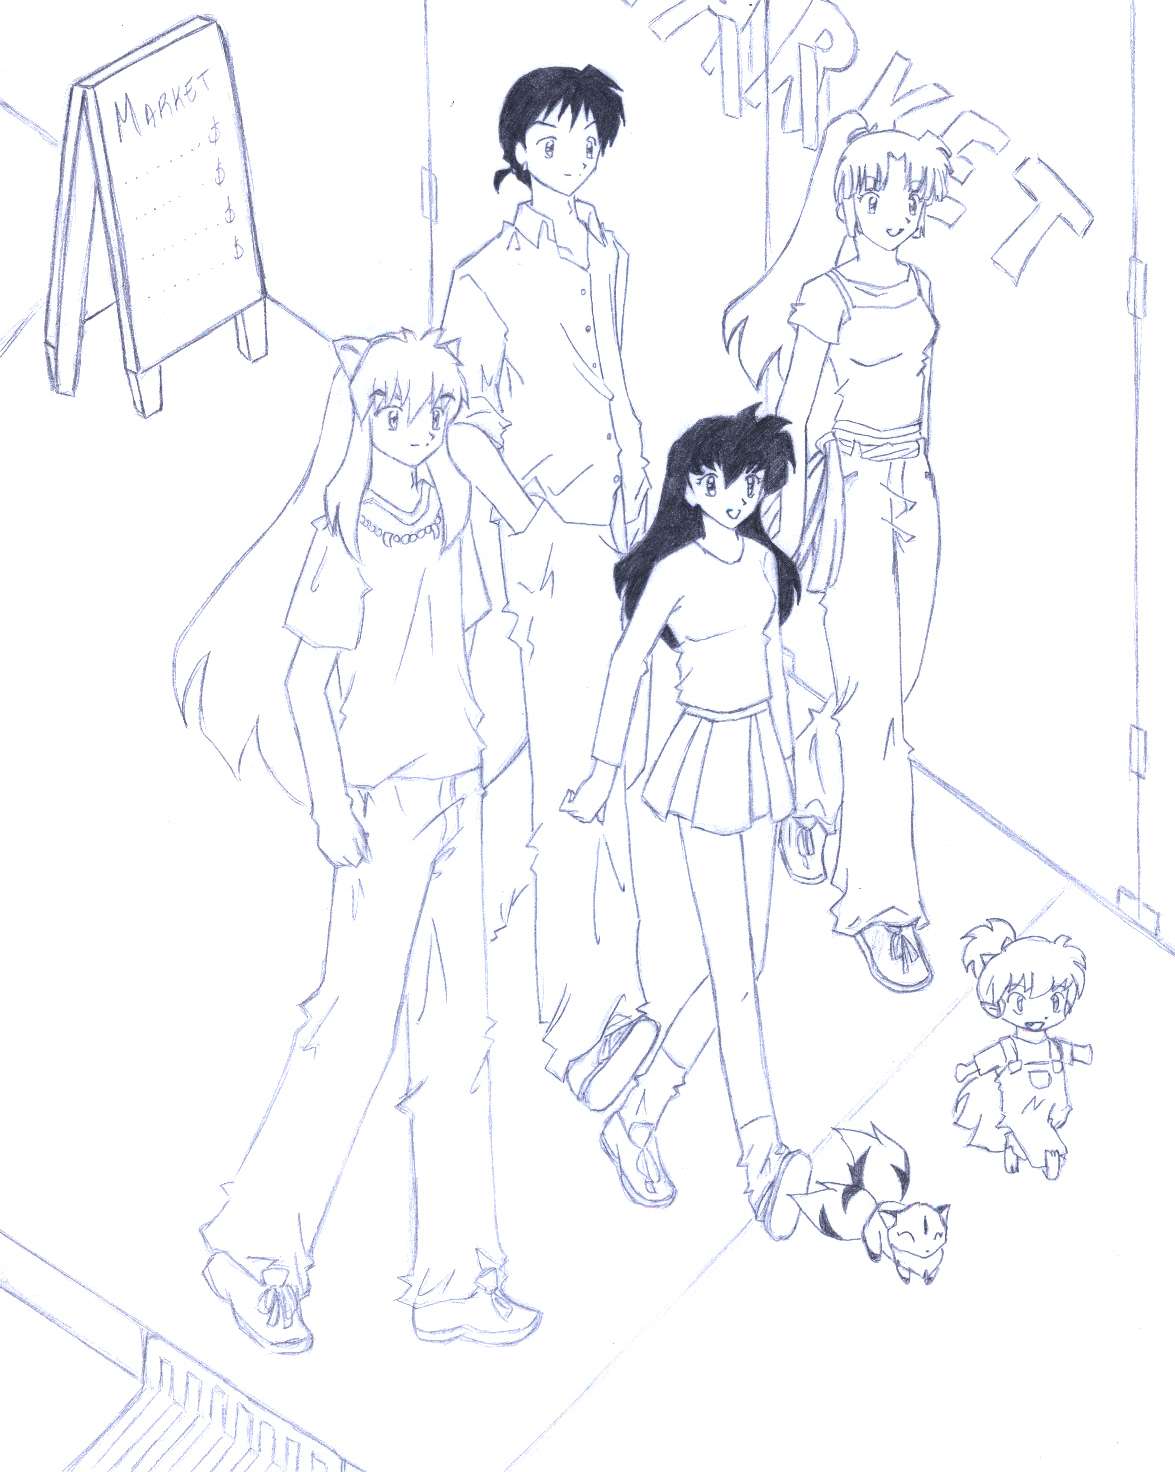 Inuyasha's group in modern age by saeki_annika